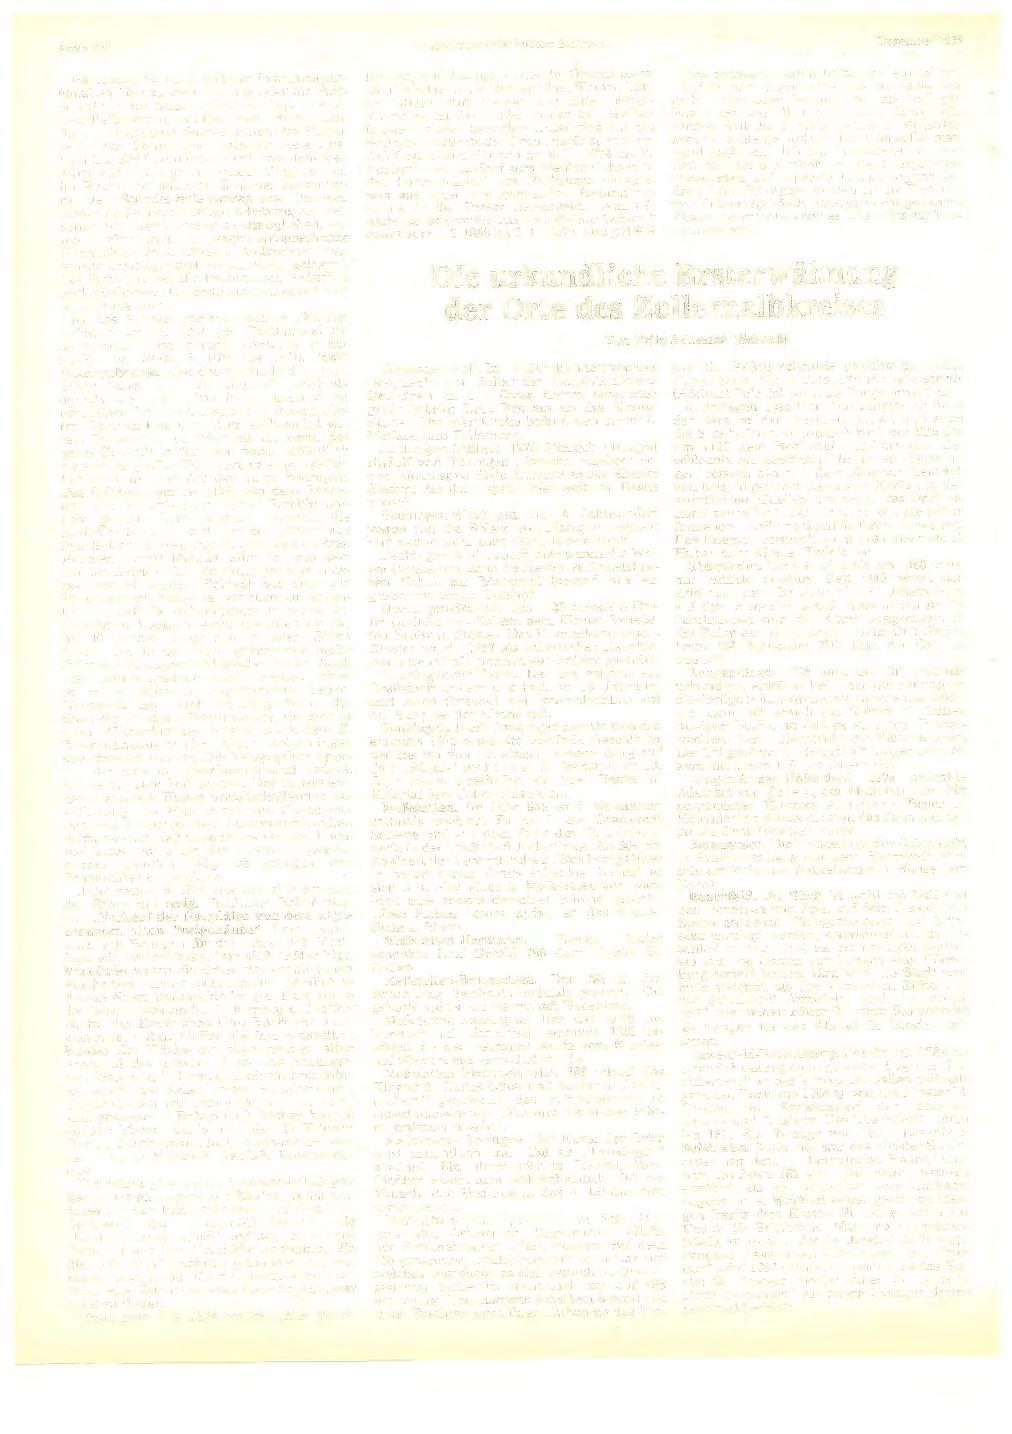 Seite 430 Heimatkundliehe Blätte r Balingen Dezember 1983 Interessant ist auch, daß das Landjägerpersonal darü ber zu wachen hatte, "da ß di e P osteinnahme des Staates nicht in Folge heimlicher